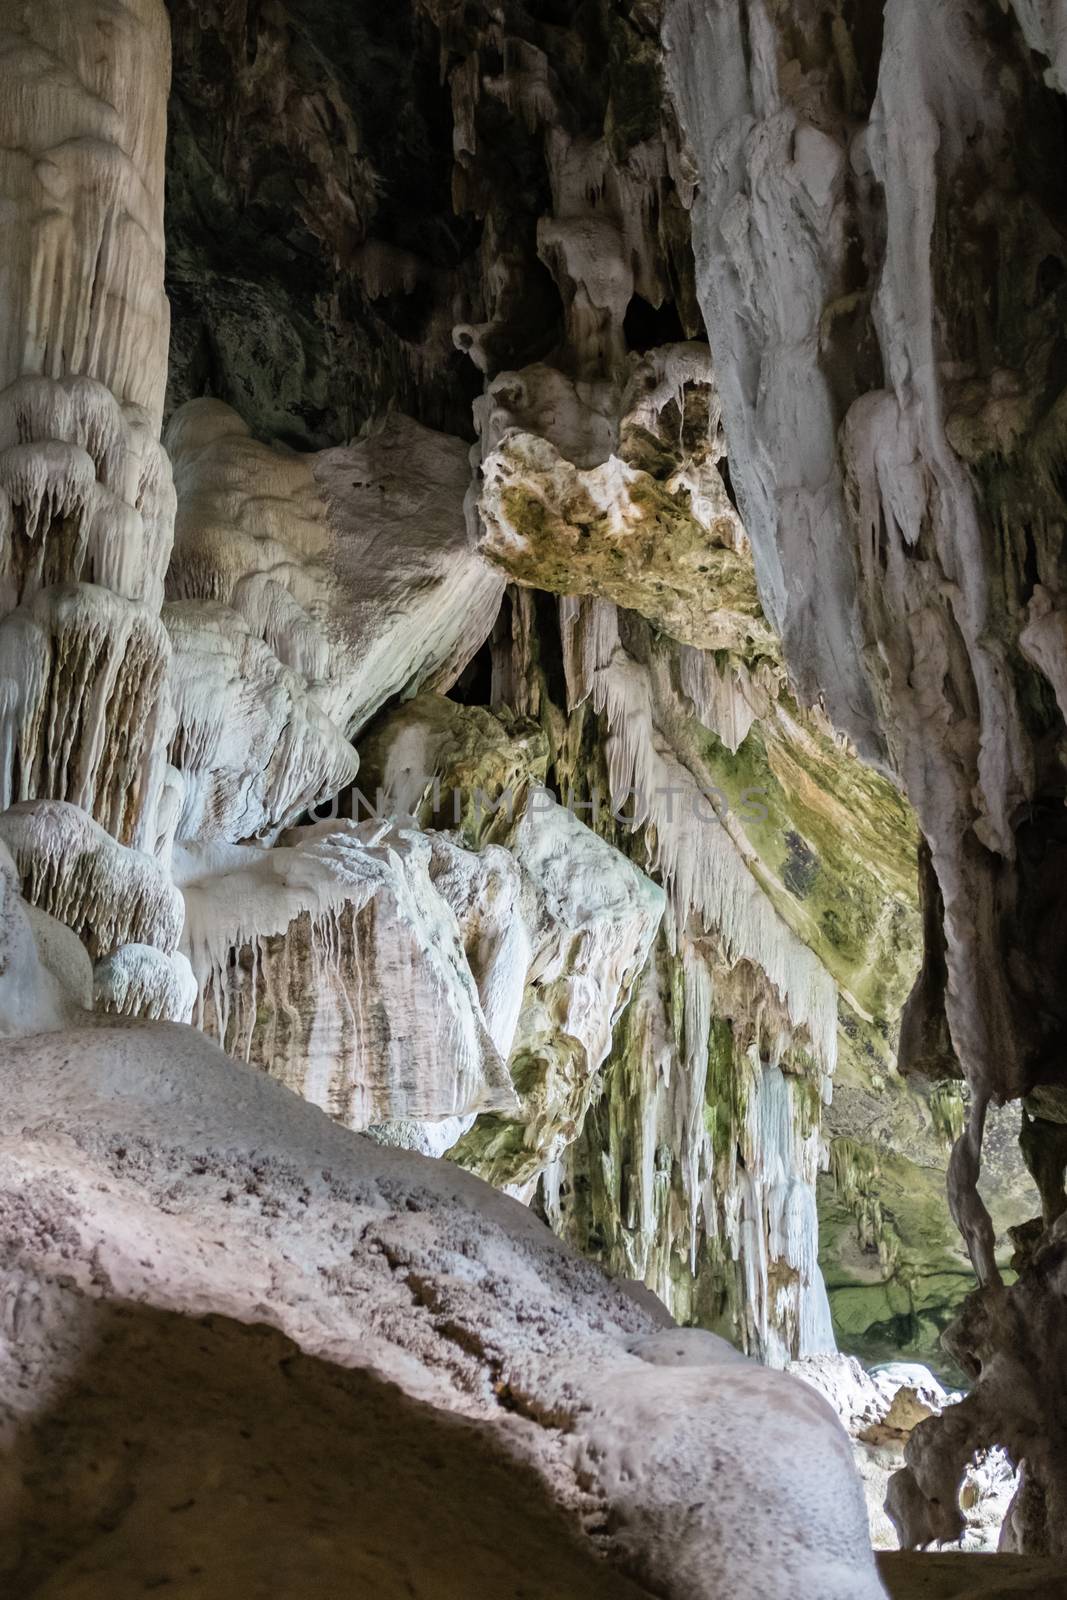 Cave at the Angthong island, Thailand